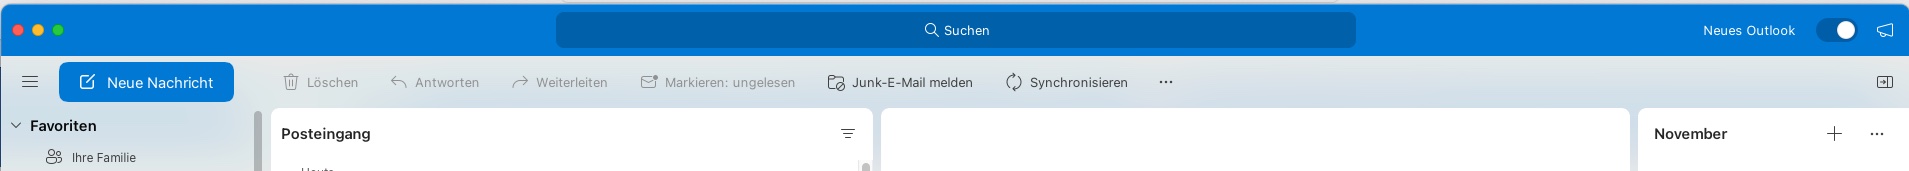 Outlook macOS.jpg